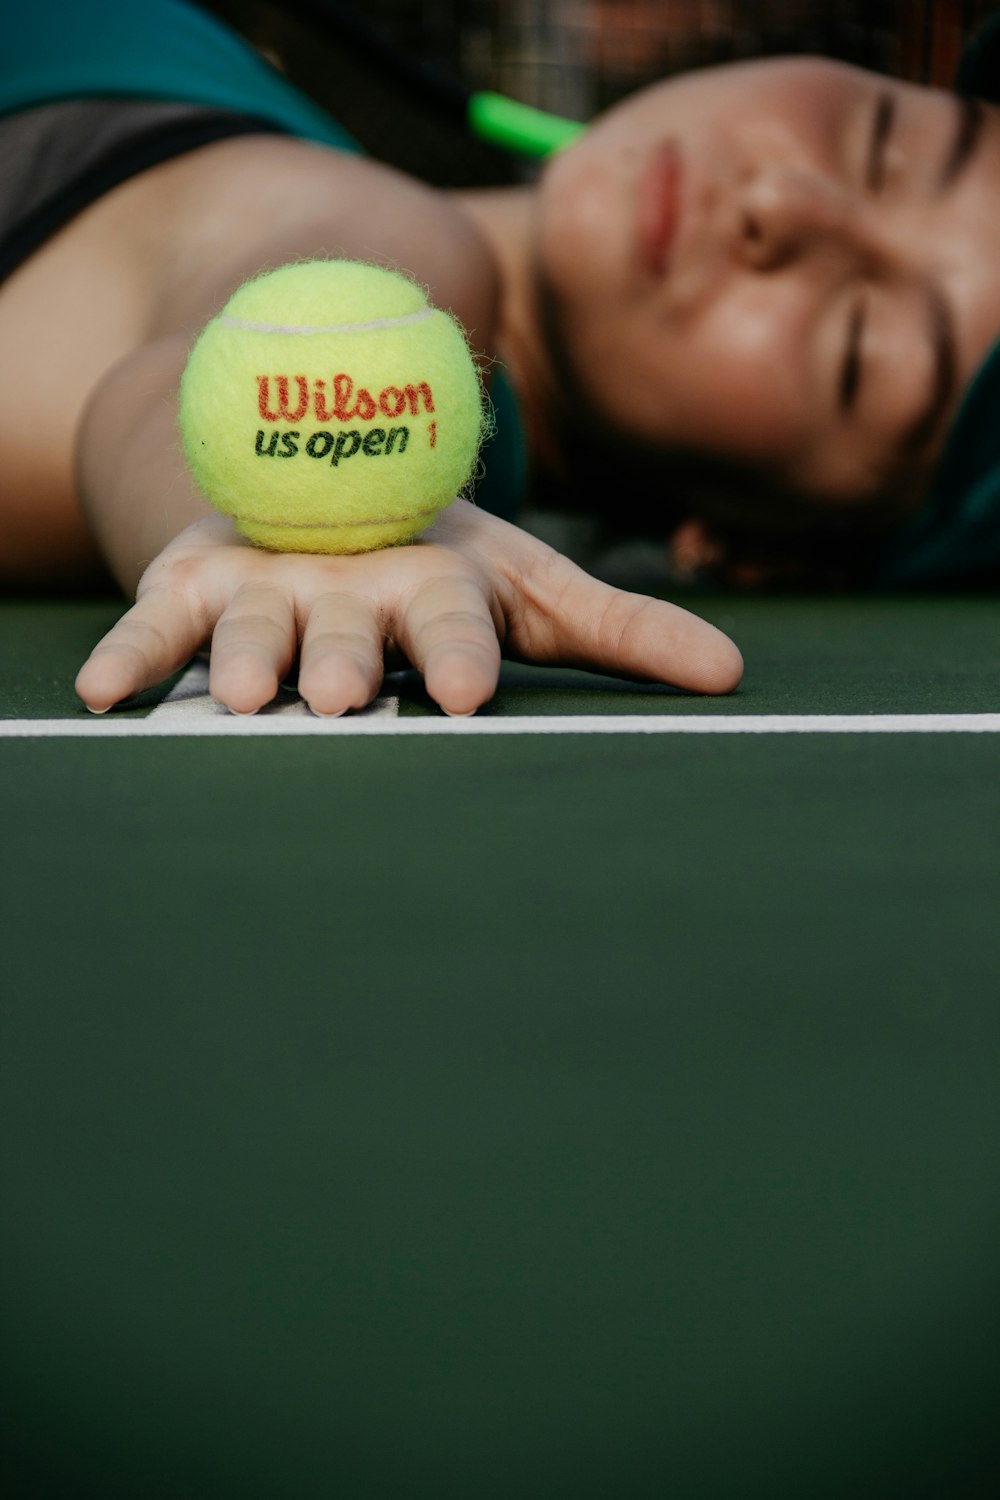 Frau liegt auf dem Tennisplatz und hält grünen Wilson-Ball